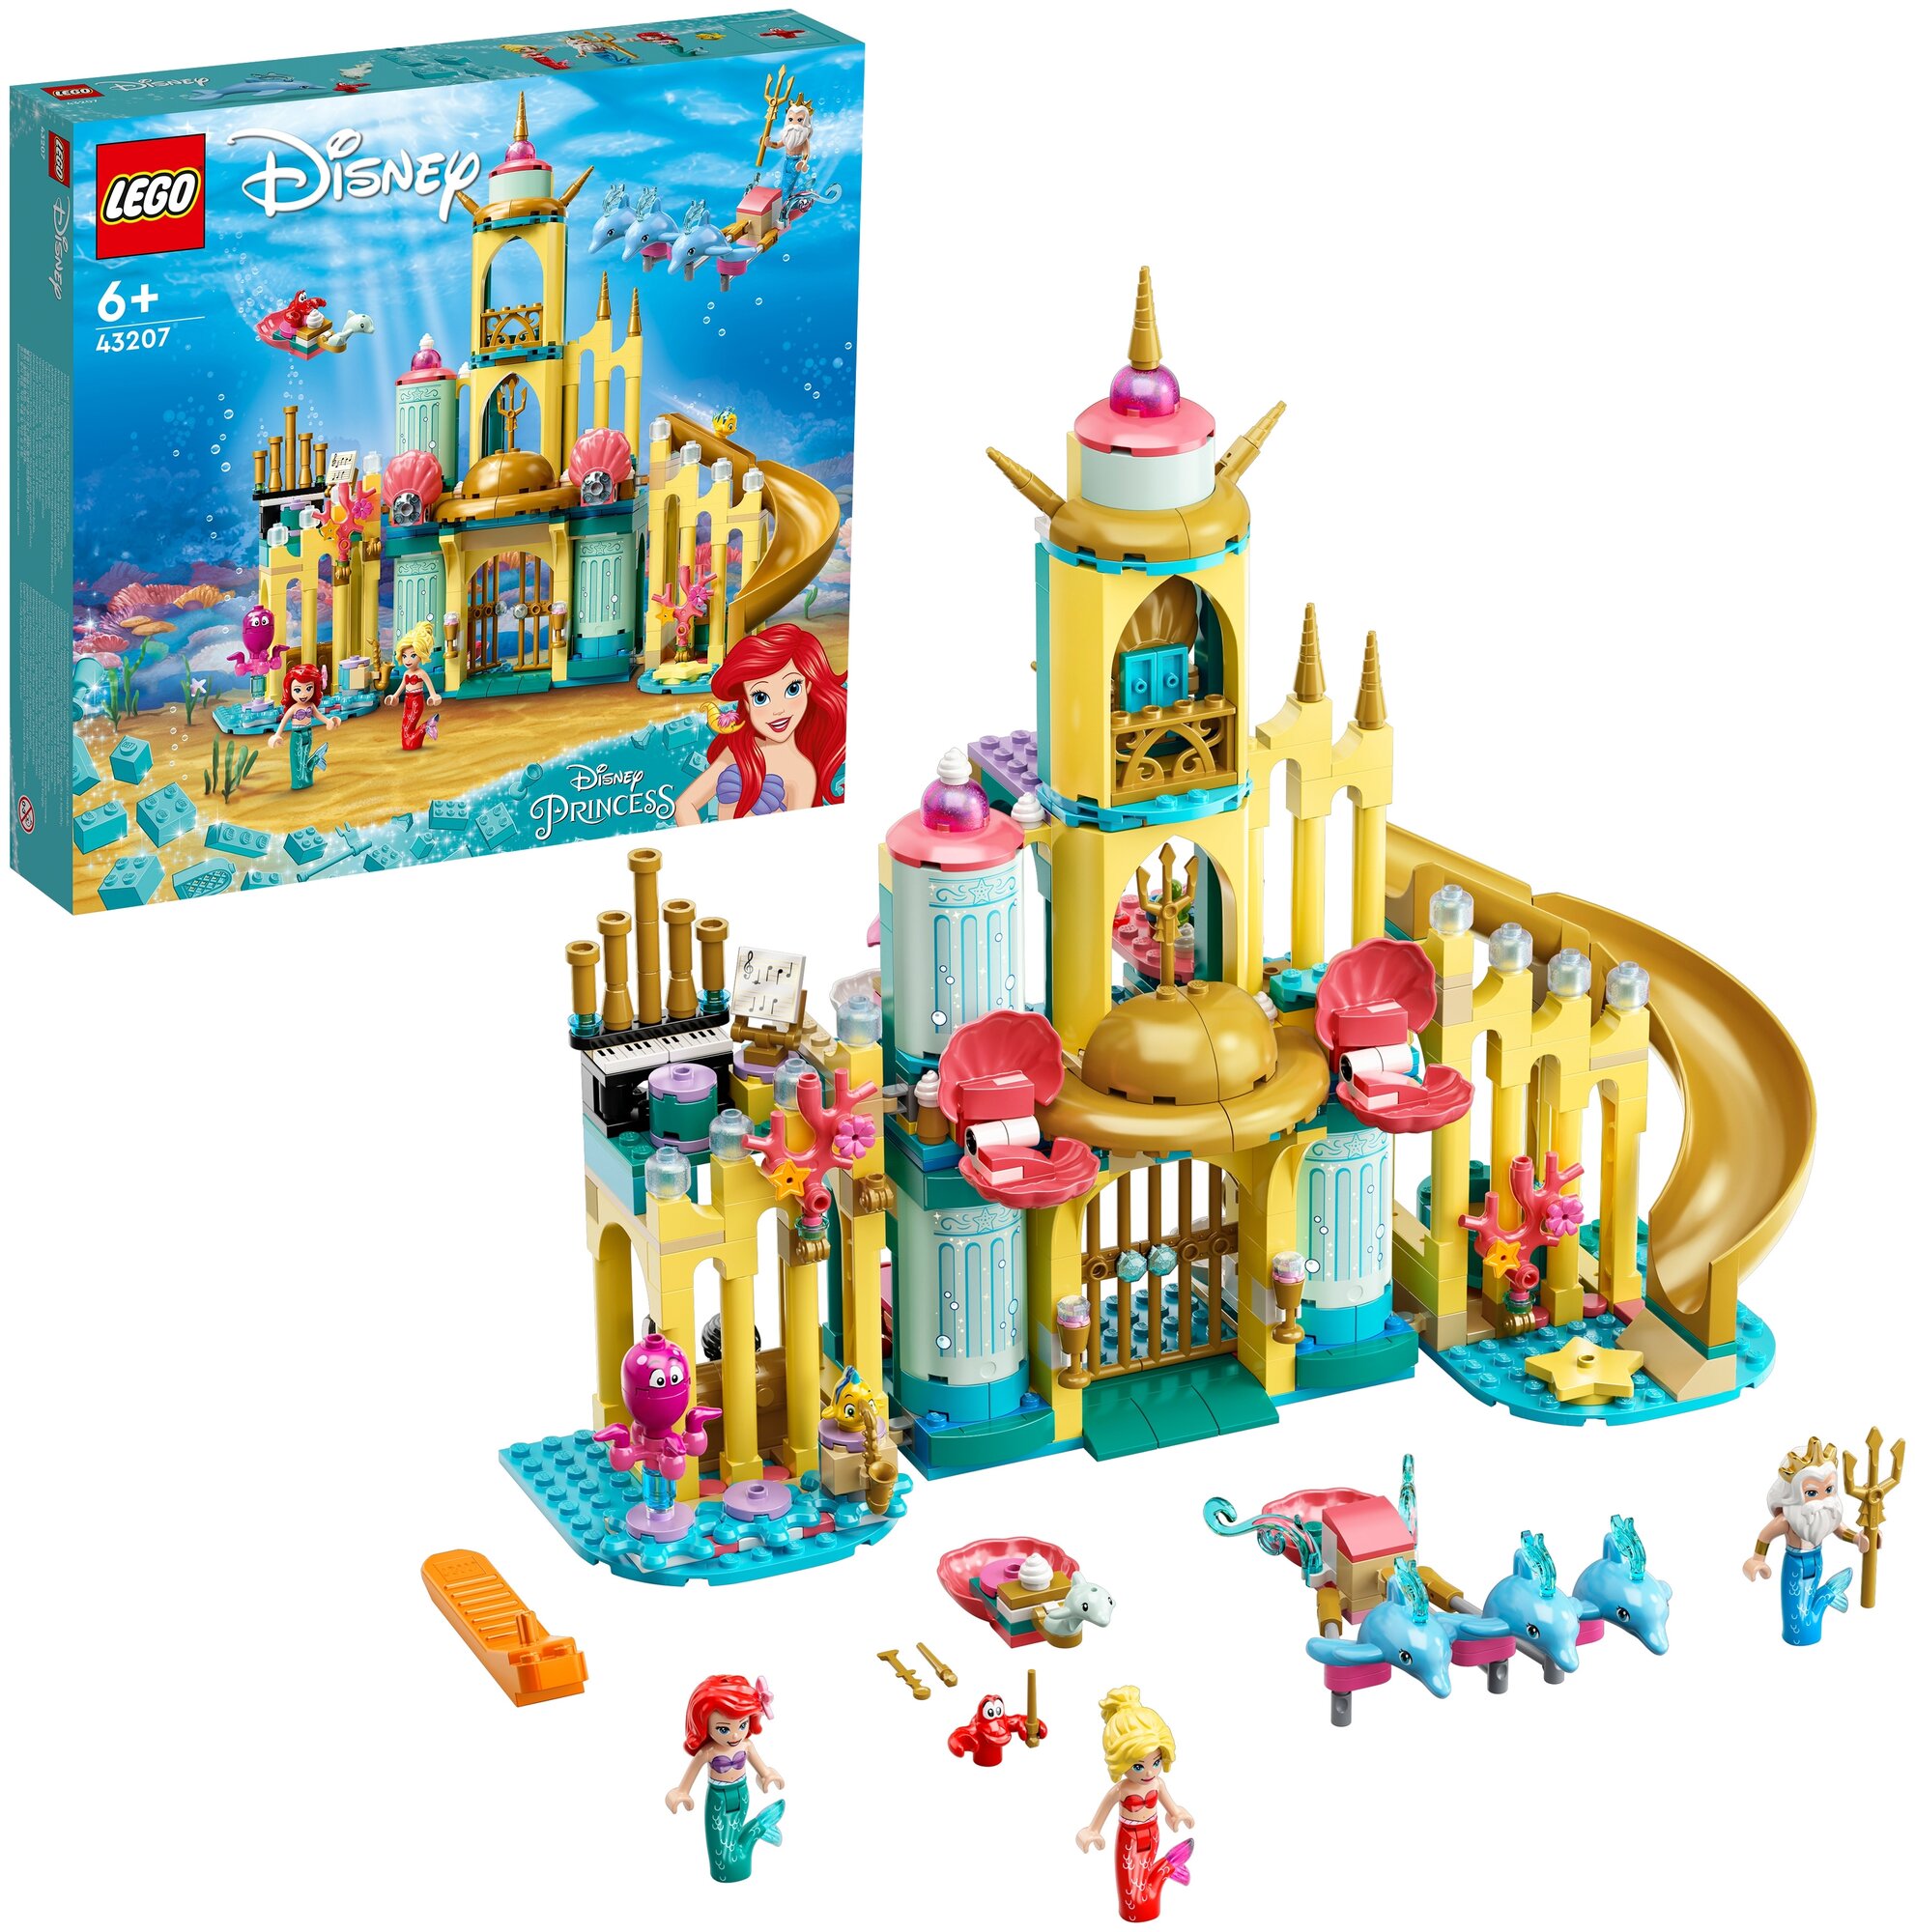 Конструктор LEGO Disney Princess 43207 "Подводный дворец Ариэль" - фото №5